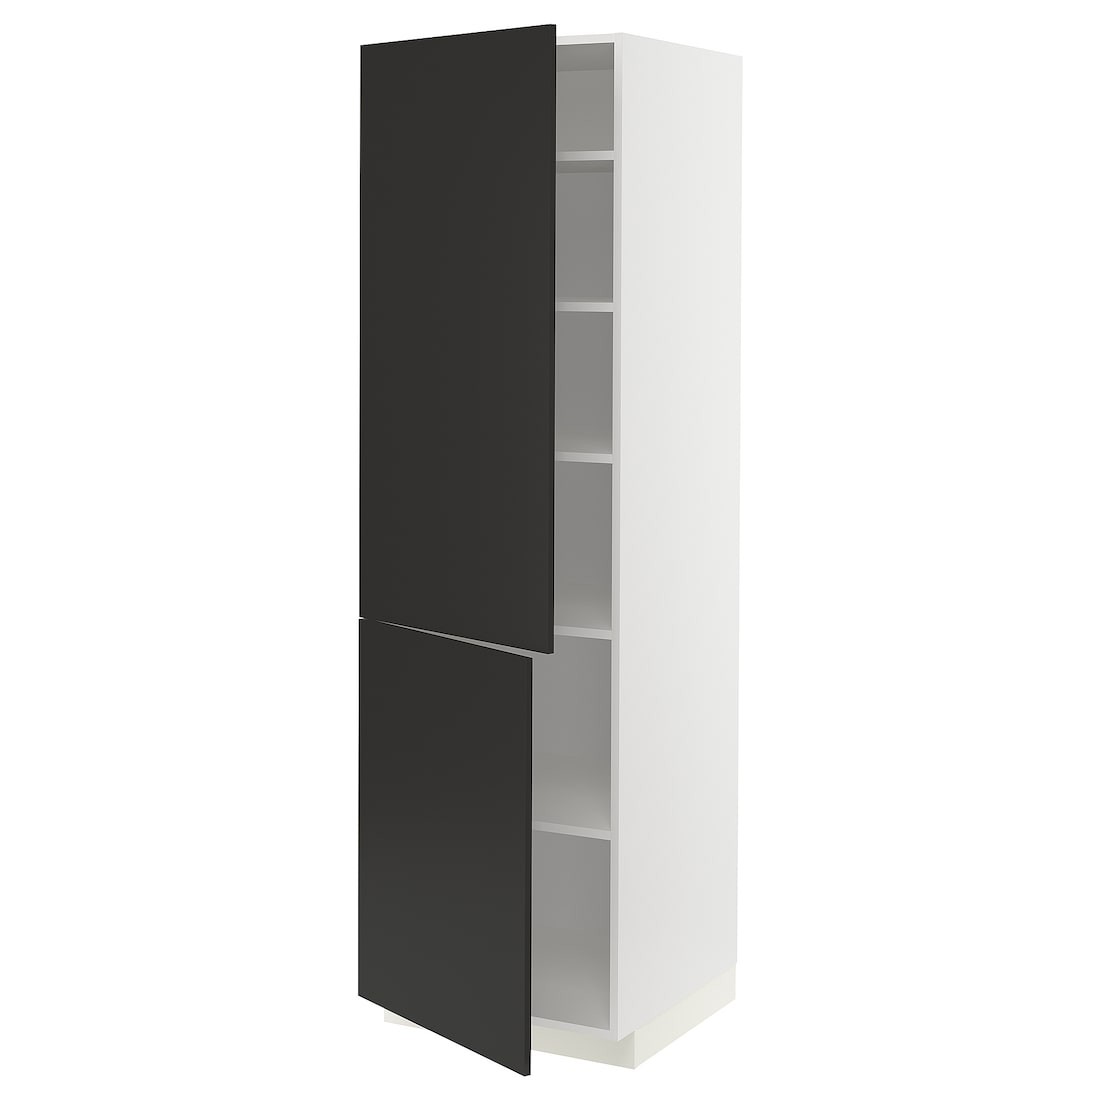 IKEA METOD МЕТОД Висока шафа з полицями / 2 дверцят, білий / Nickebo матовий антрацит, 60x60x200 см 49498461 494.984.61